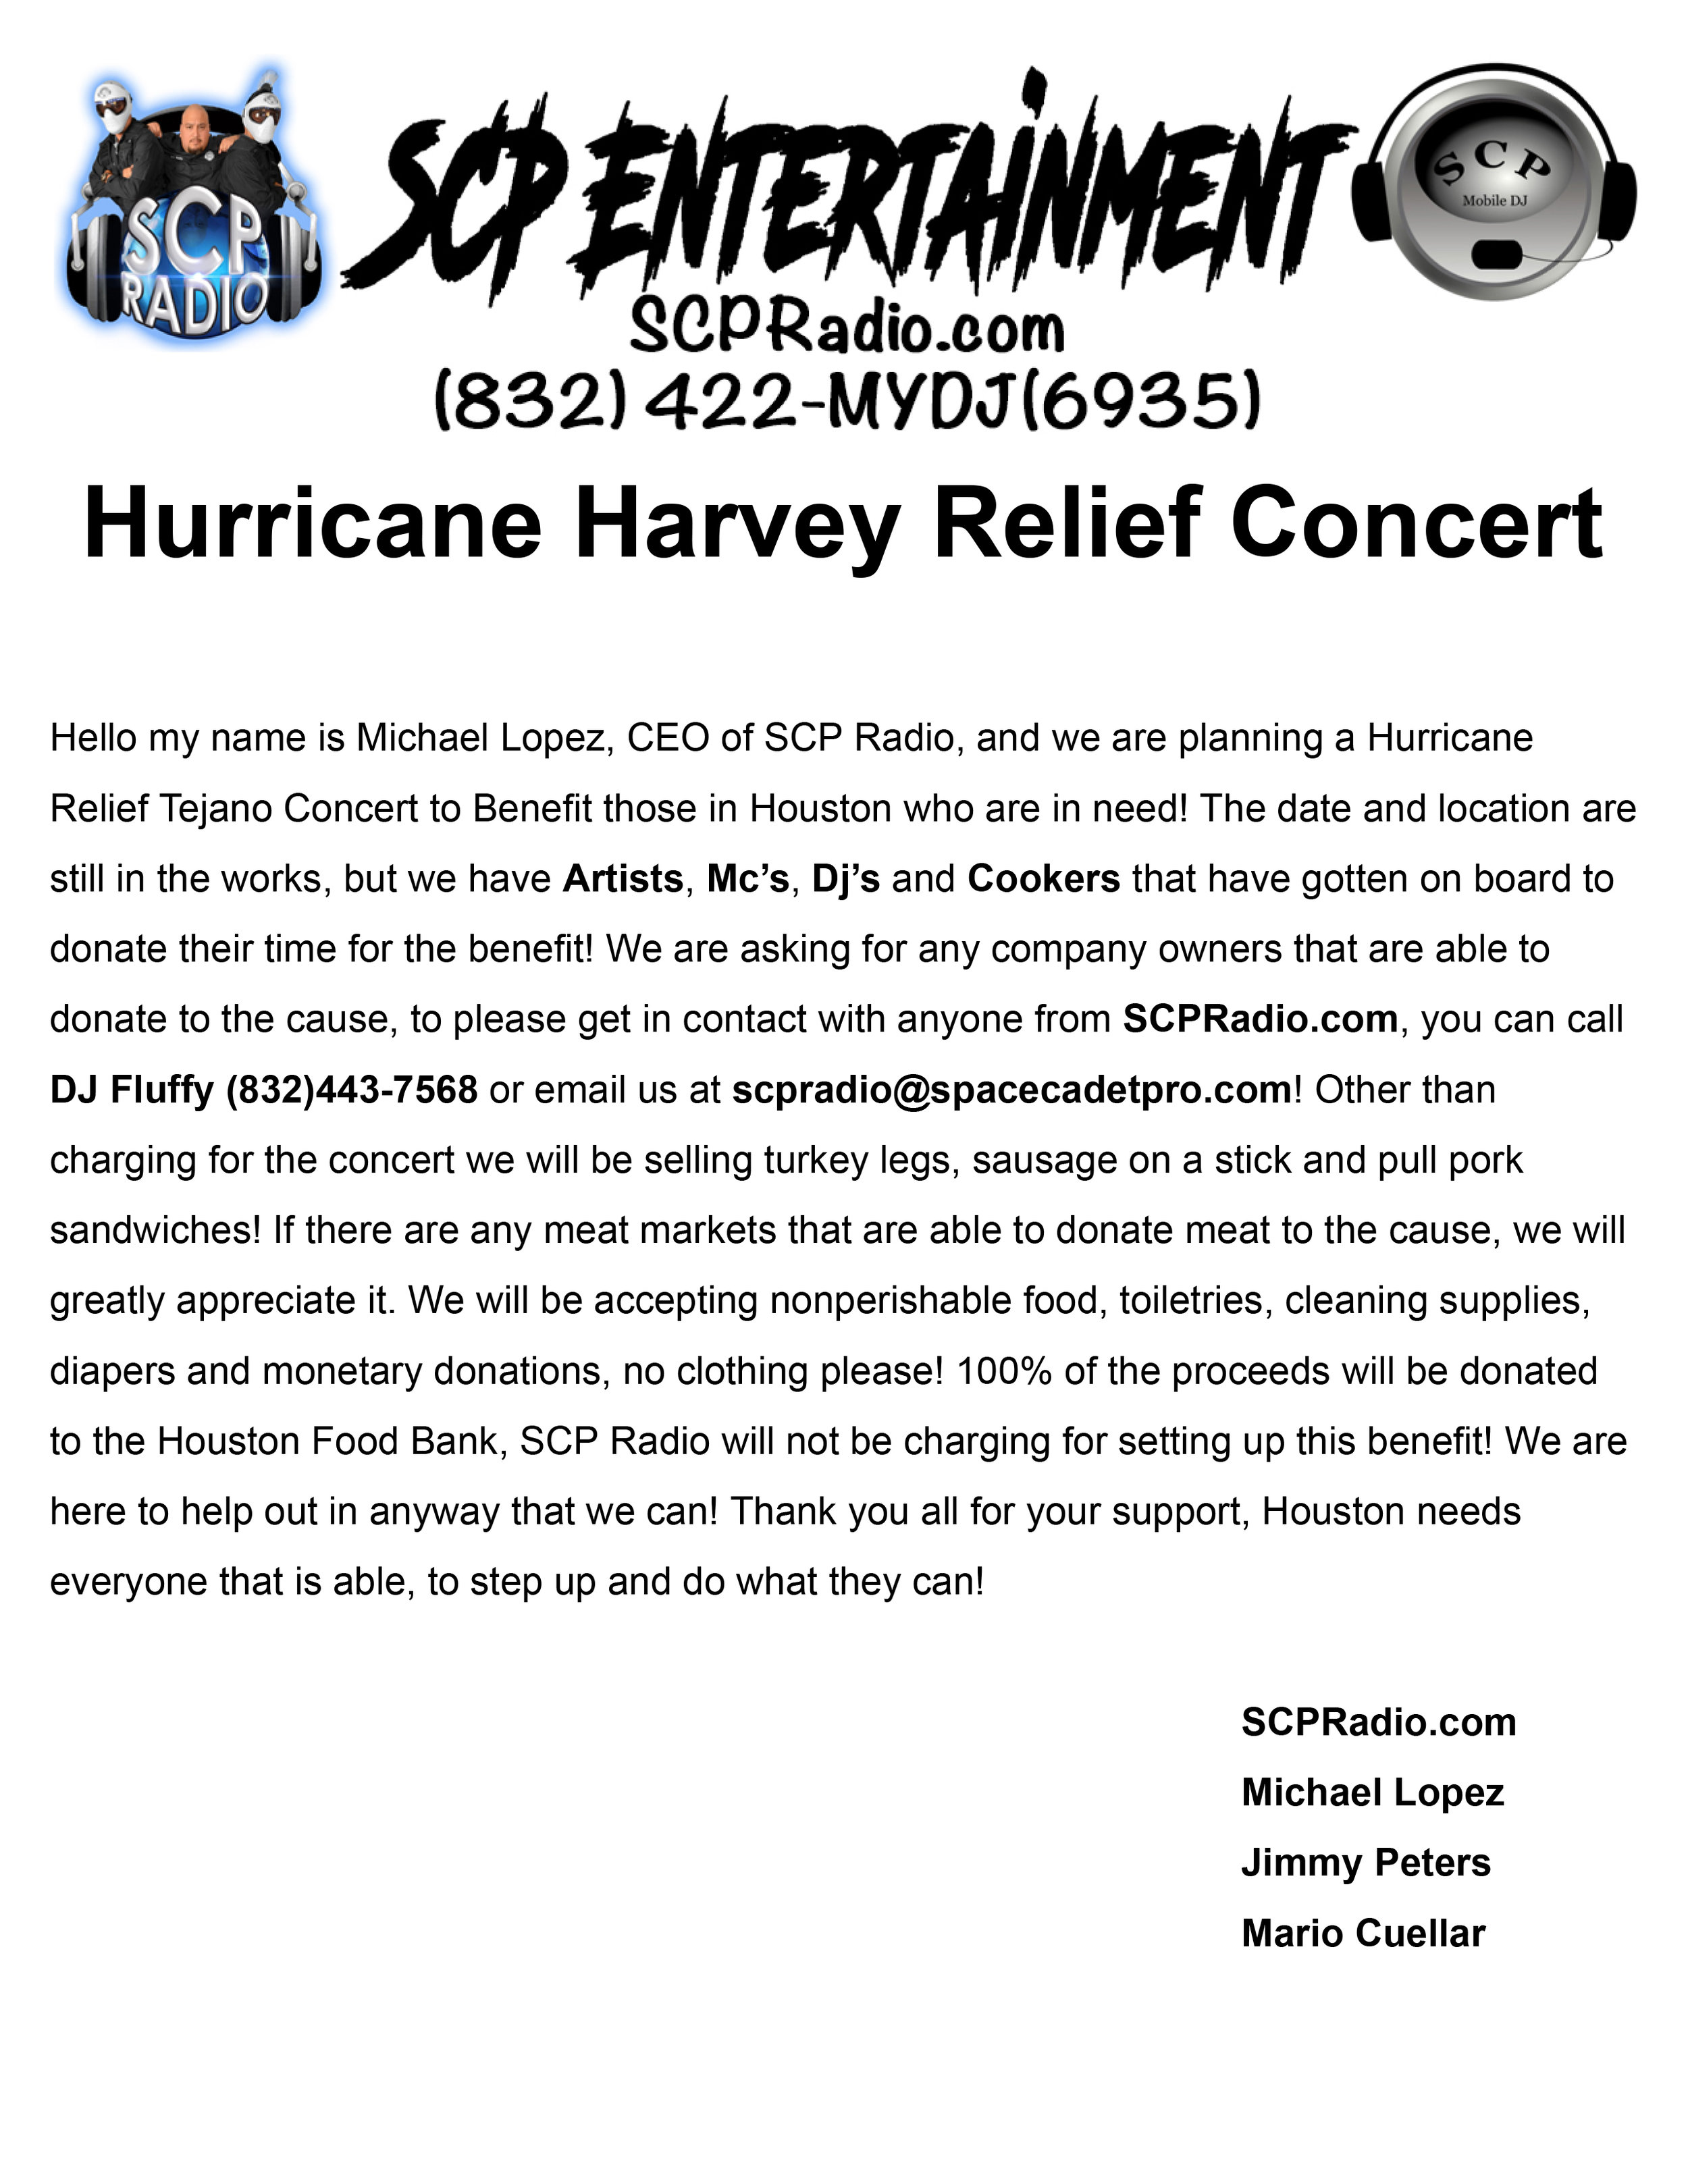 Hurricane Harvey Relief Concert.jpg